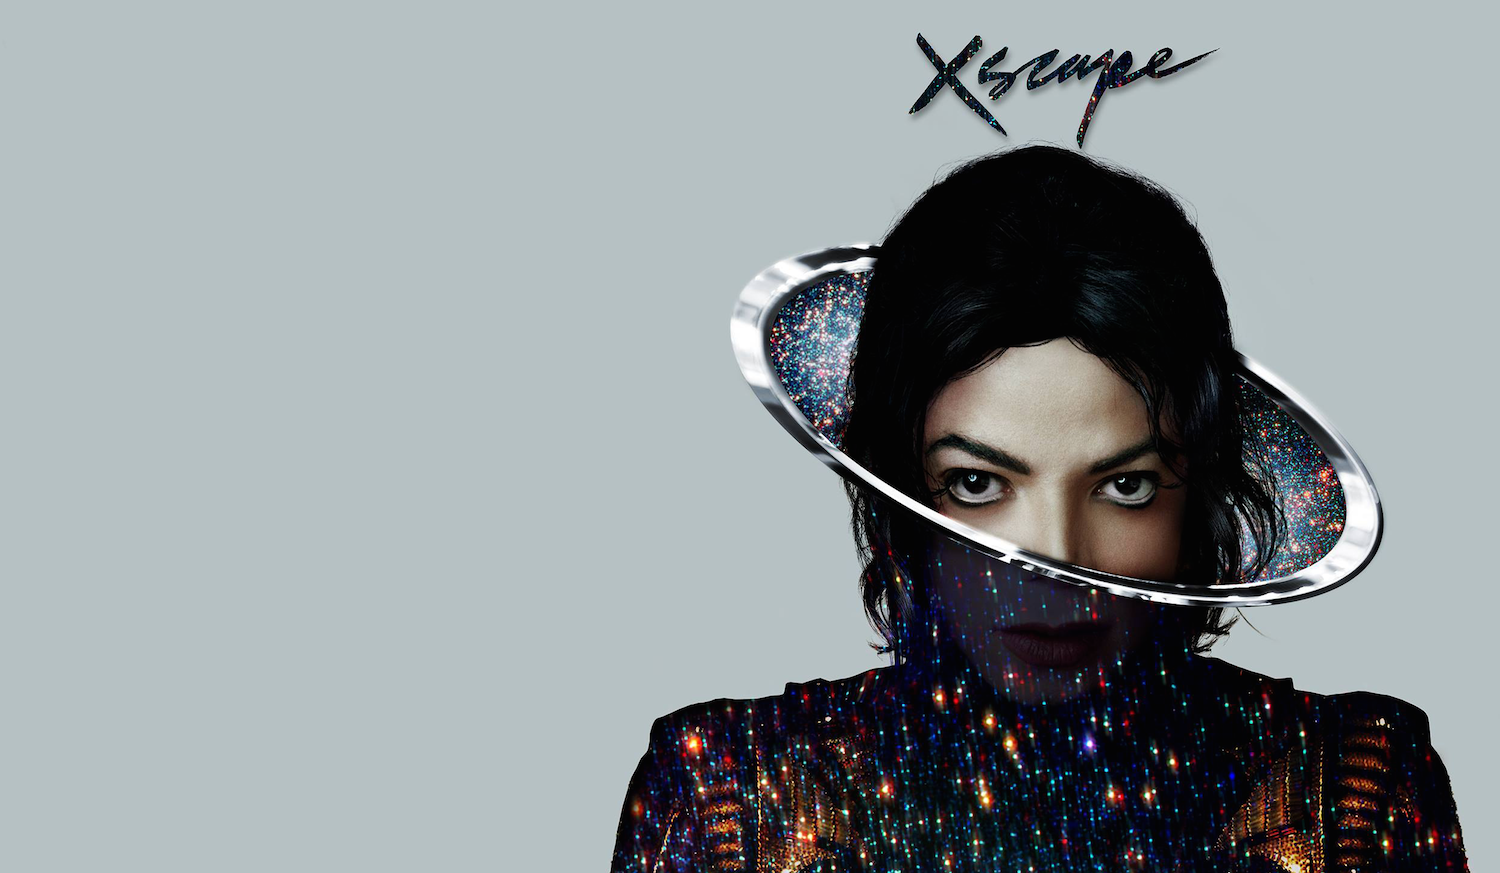 Michael Jackson Xscape album. Альбом Xscape Michael Jackson.